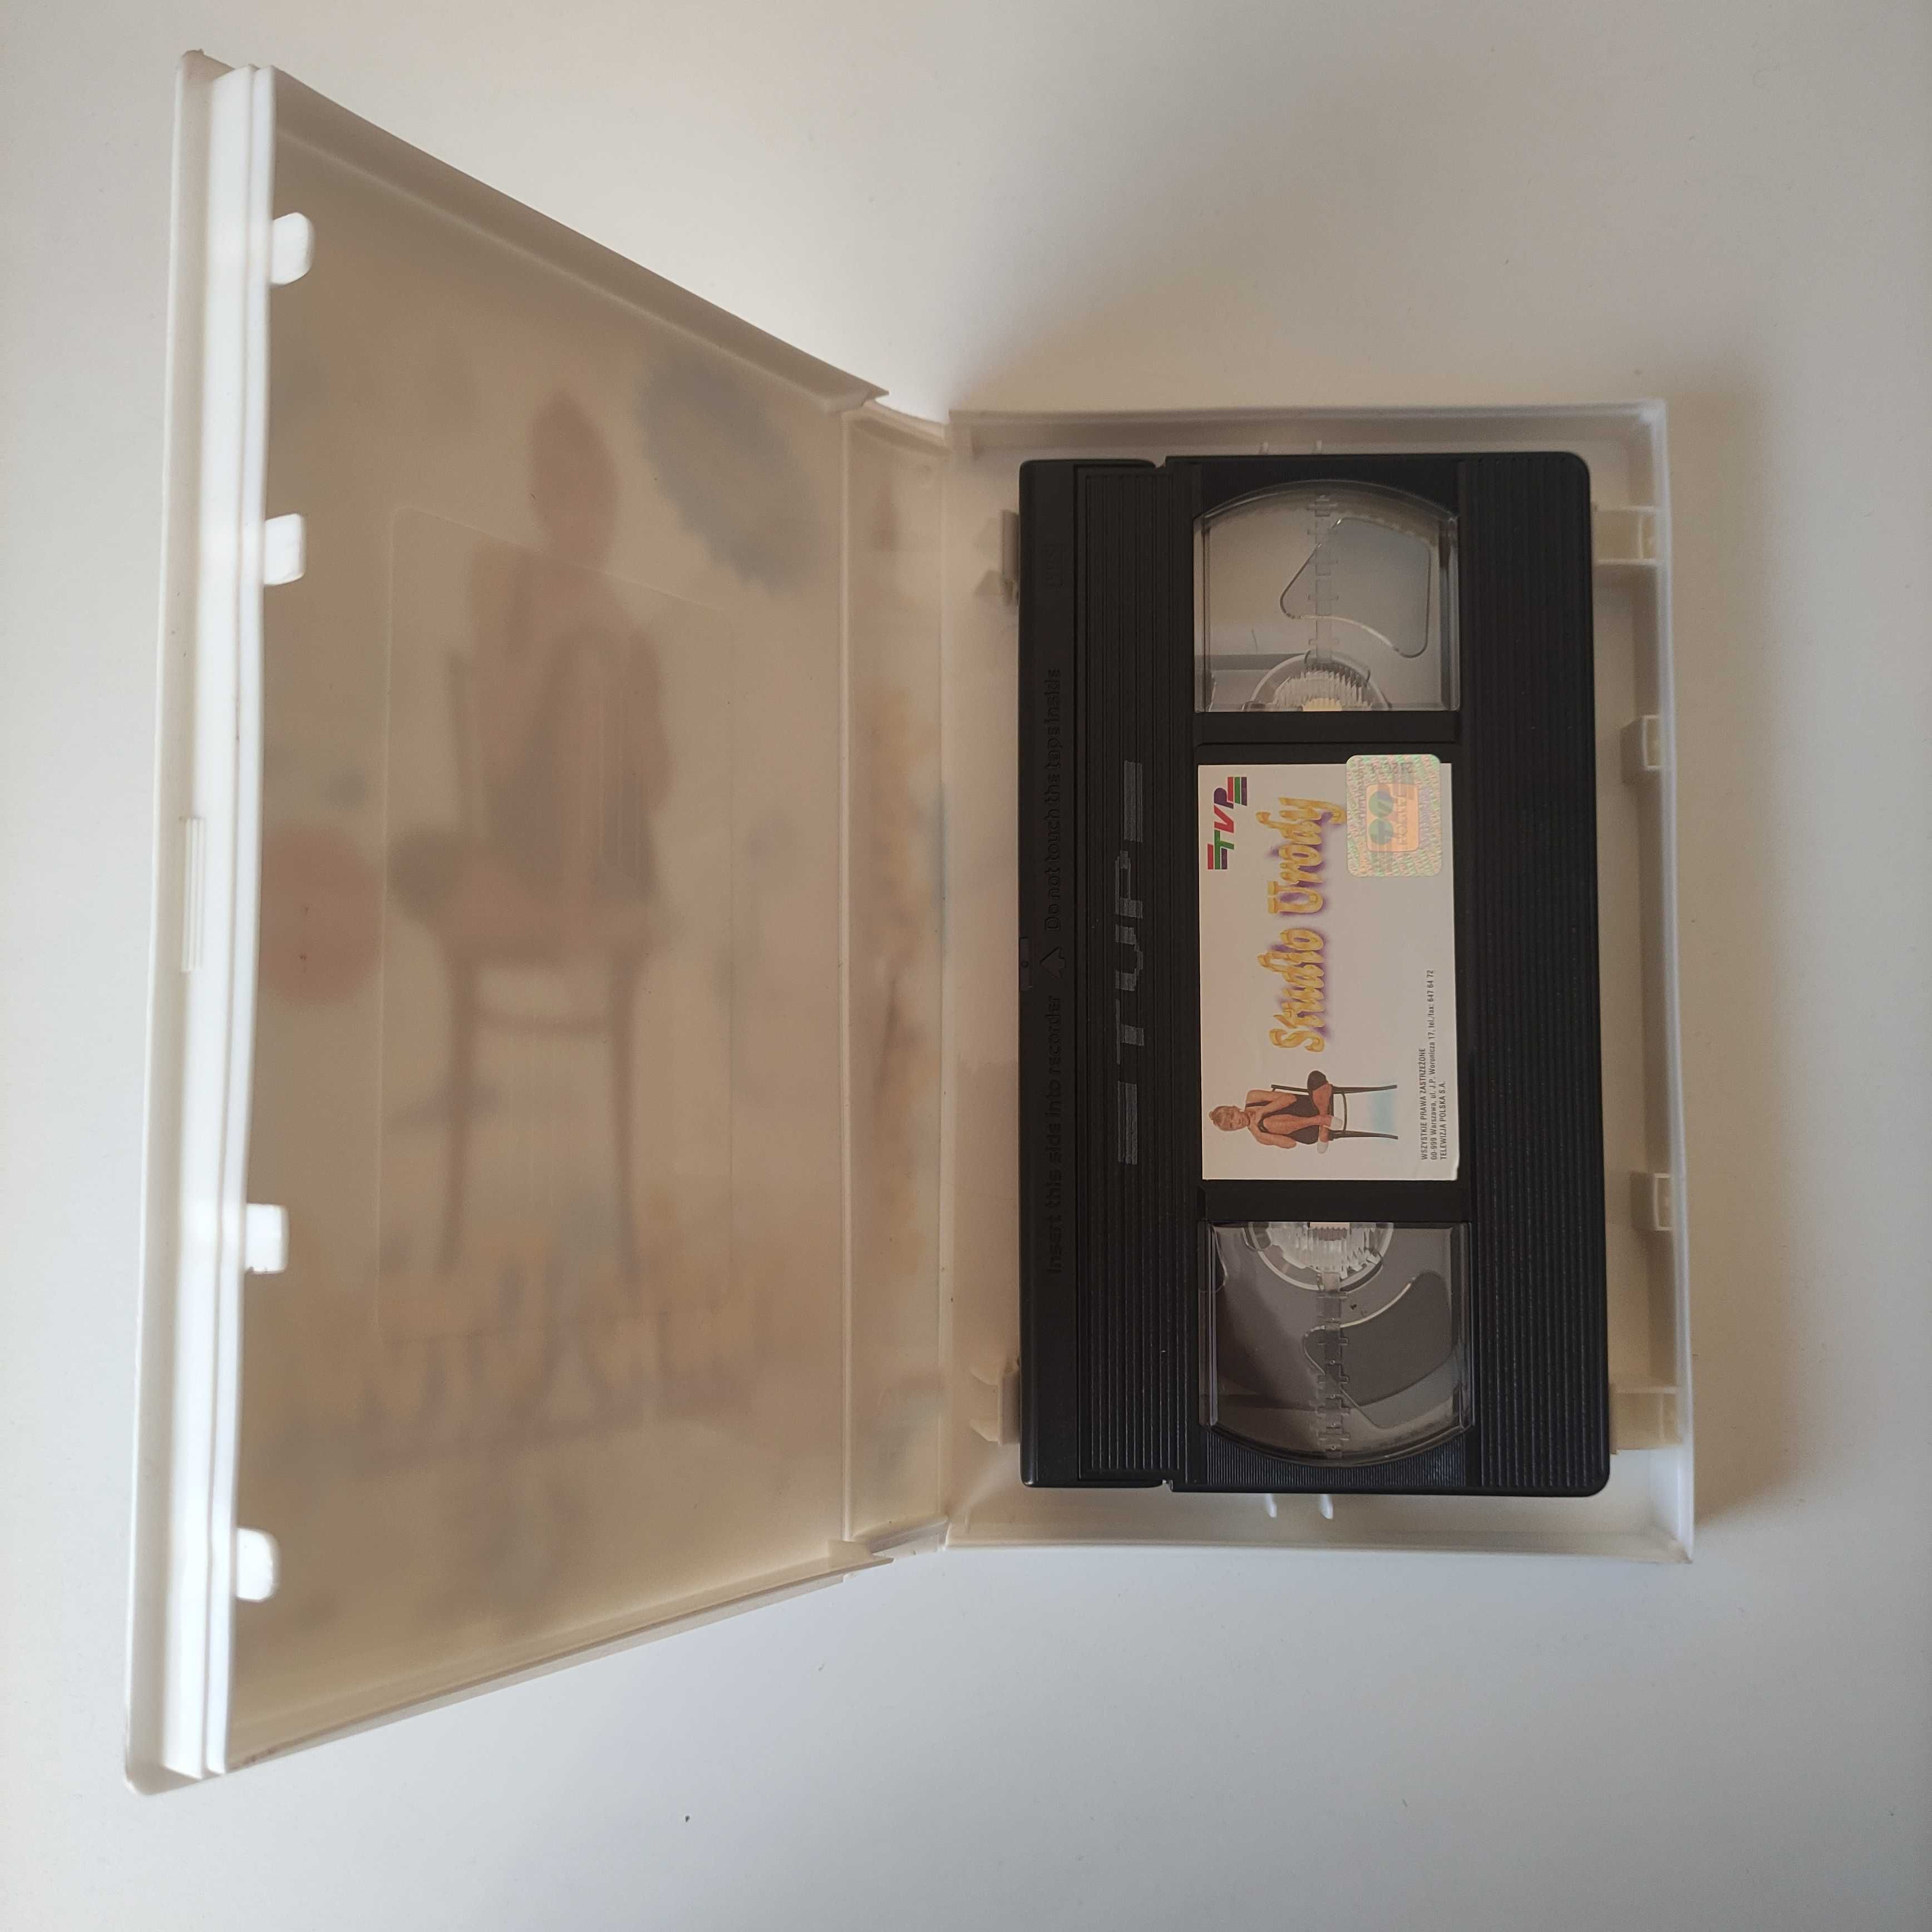 Studio Urody Marioli Bojarskiej-Ferenc - Kaseta VHS